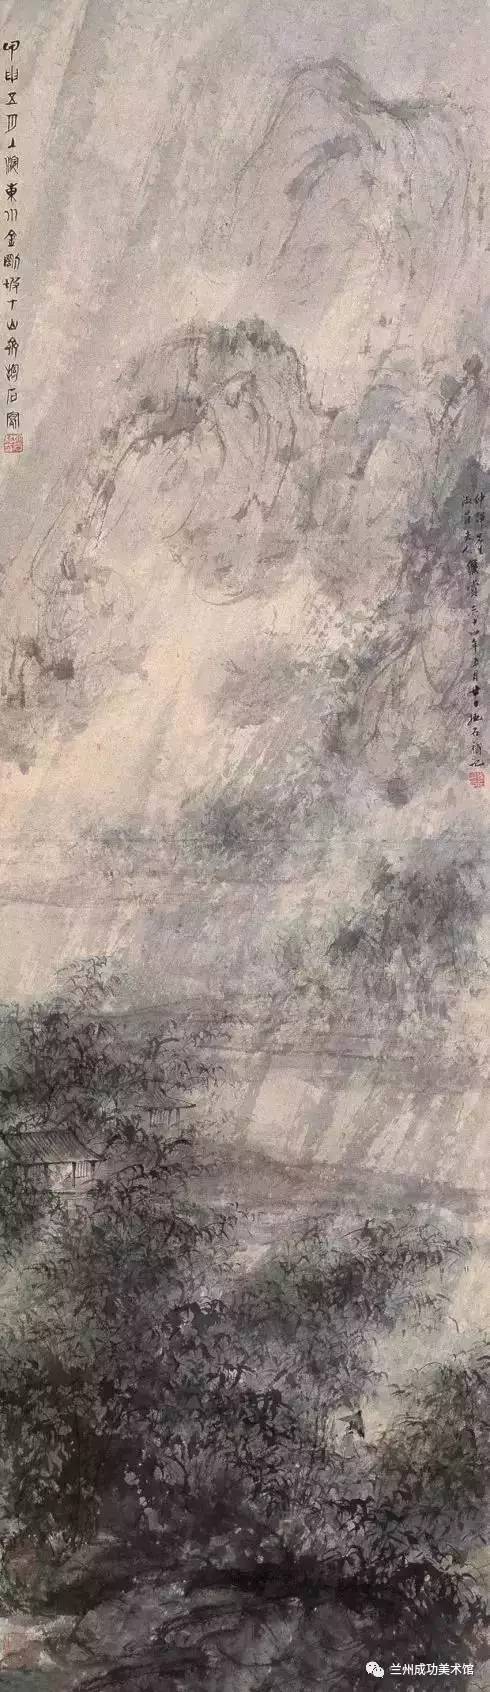 作为抱石最常画的"风雨山水"题材,这件作品的特点是先在纸面上甩洒了